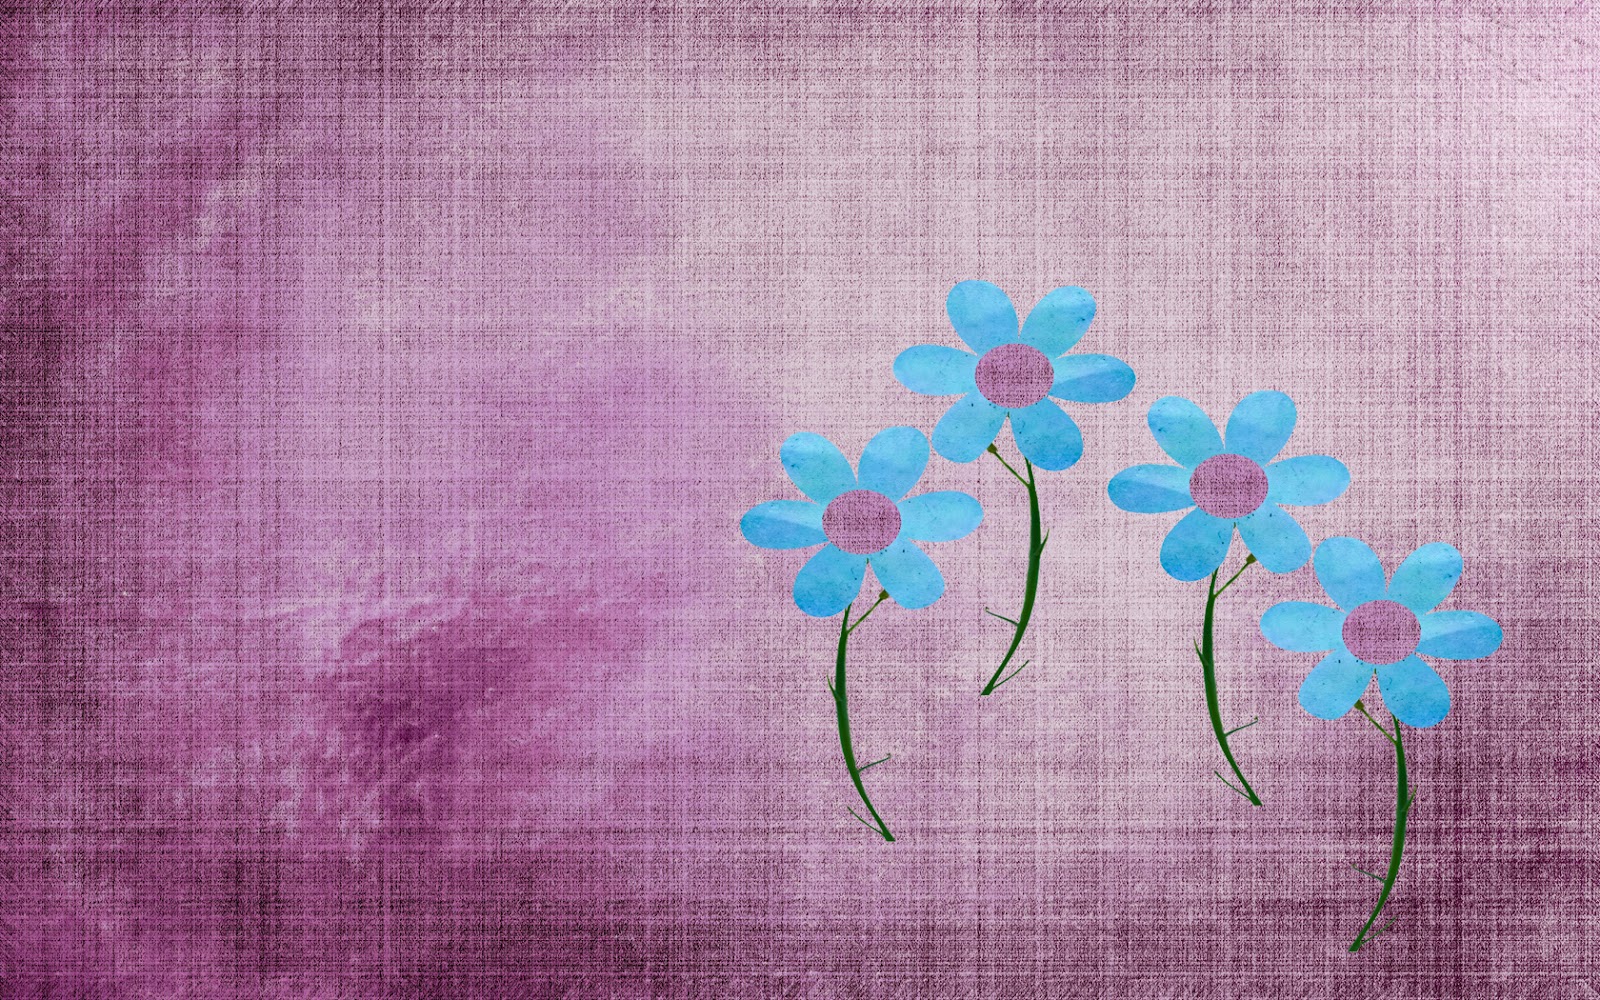 http://3.bp.blogspot.com/-SLibHrqIK_w/T7--a7Jg-4I/AAAAAAAAEGY/Fxqnq7CkDmM/s1600/blue+flowers+tumblr+background.jpg